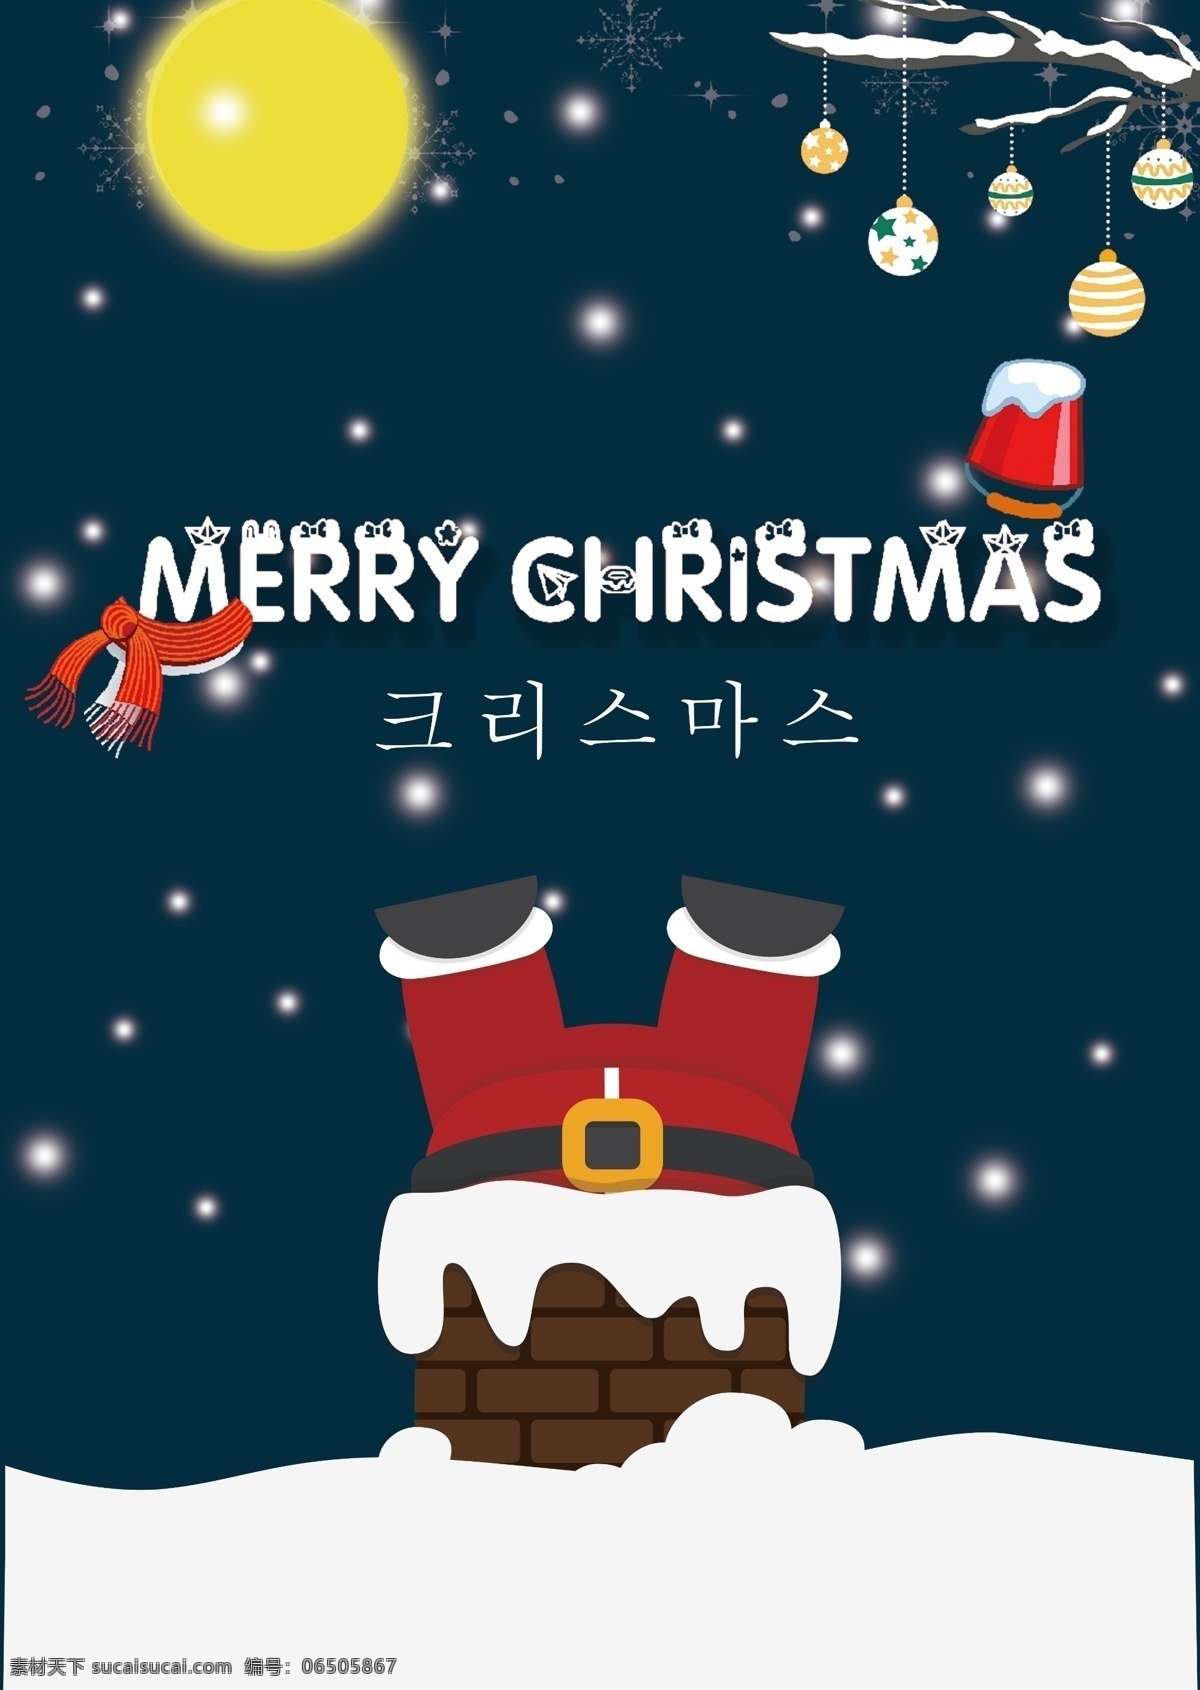 韩国 夜 圣诞老人 圣诞节 海报 2018 圣诞 电话 雪 在晚上 谢和